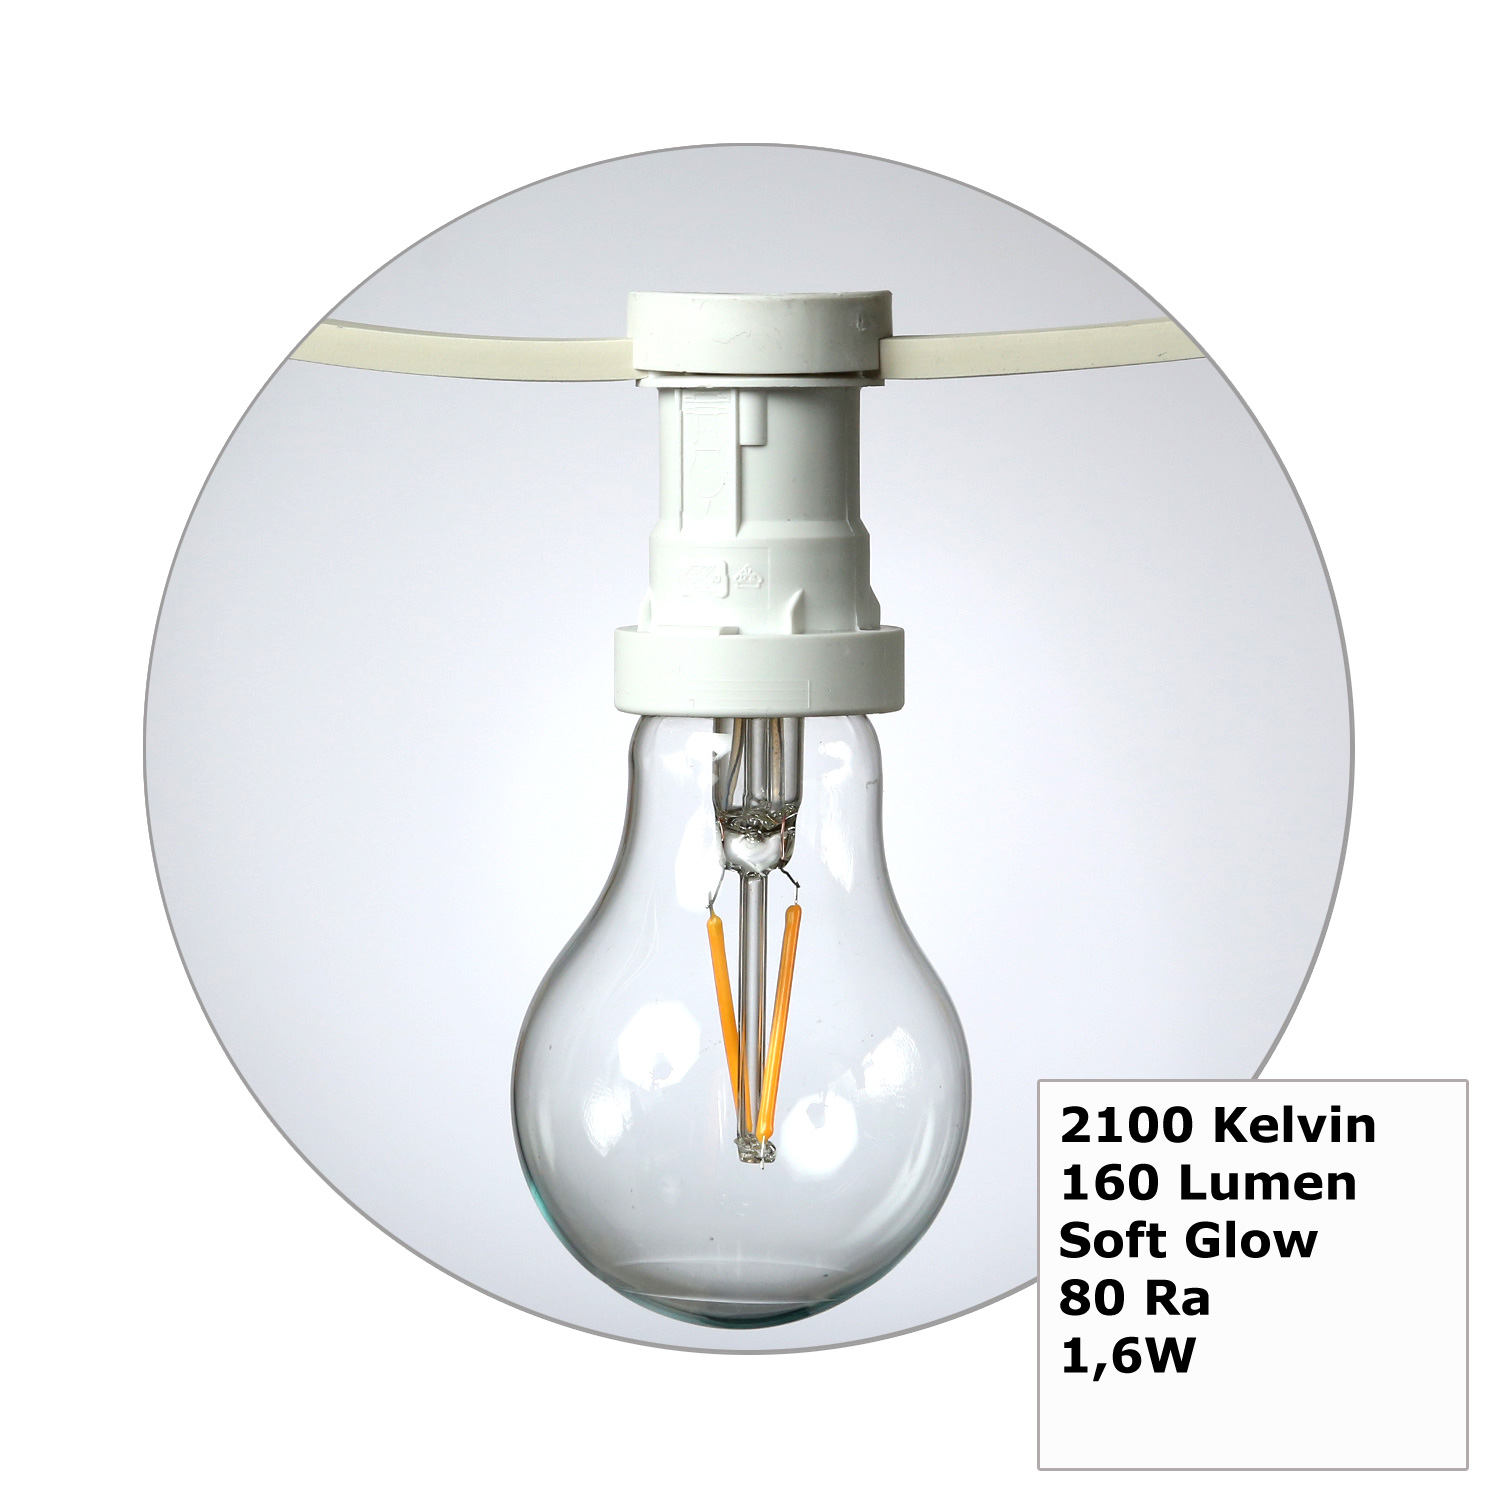 Illu-/Partylichterkette 50m - Außenlichterkette weiß - Made in Germany- 50 Edison LED Filamentlampen